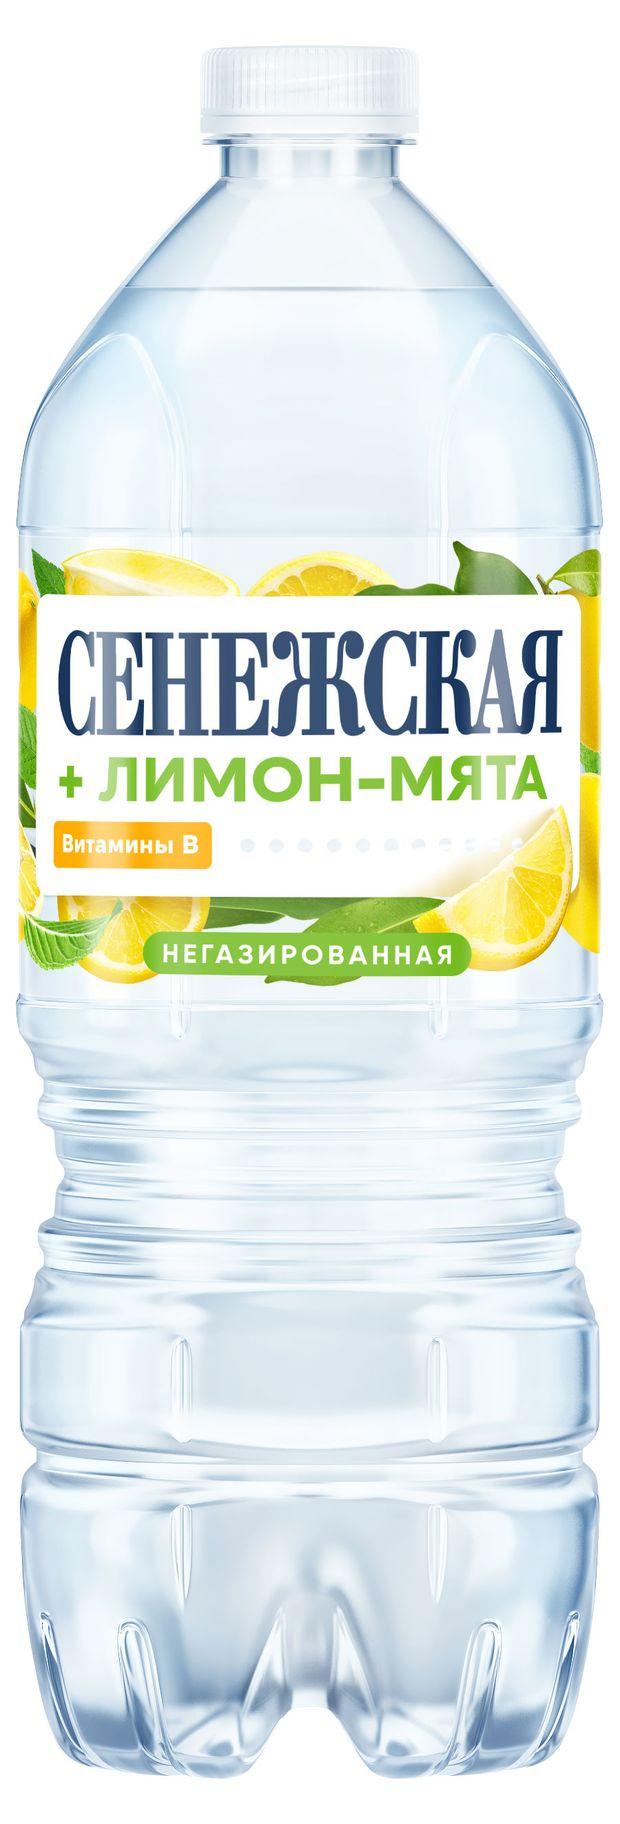 Вода питьевая Сенежская лимон-мята негазированная 1 л., ПЭТ